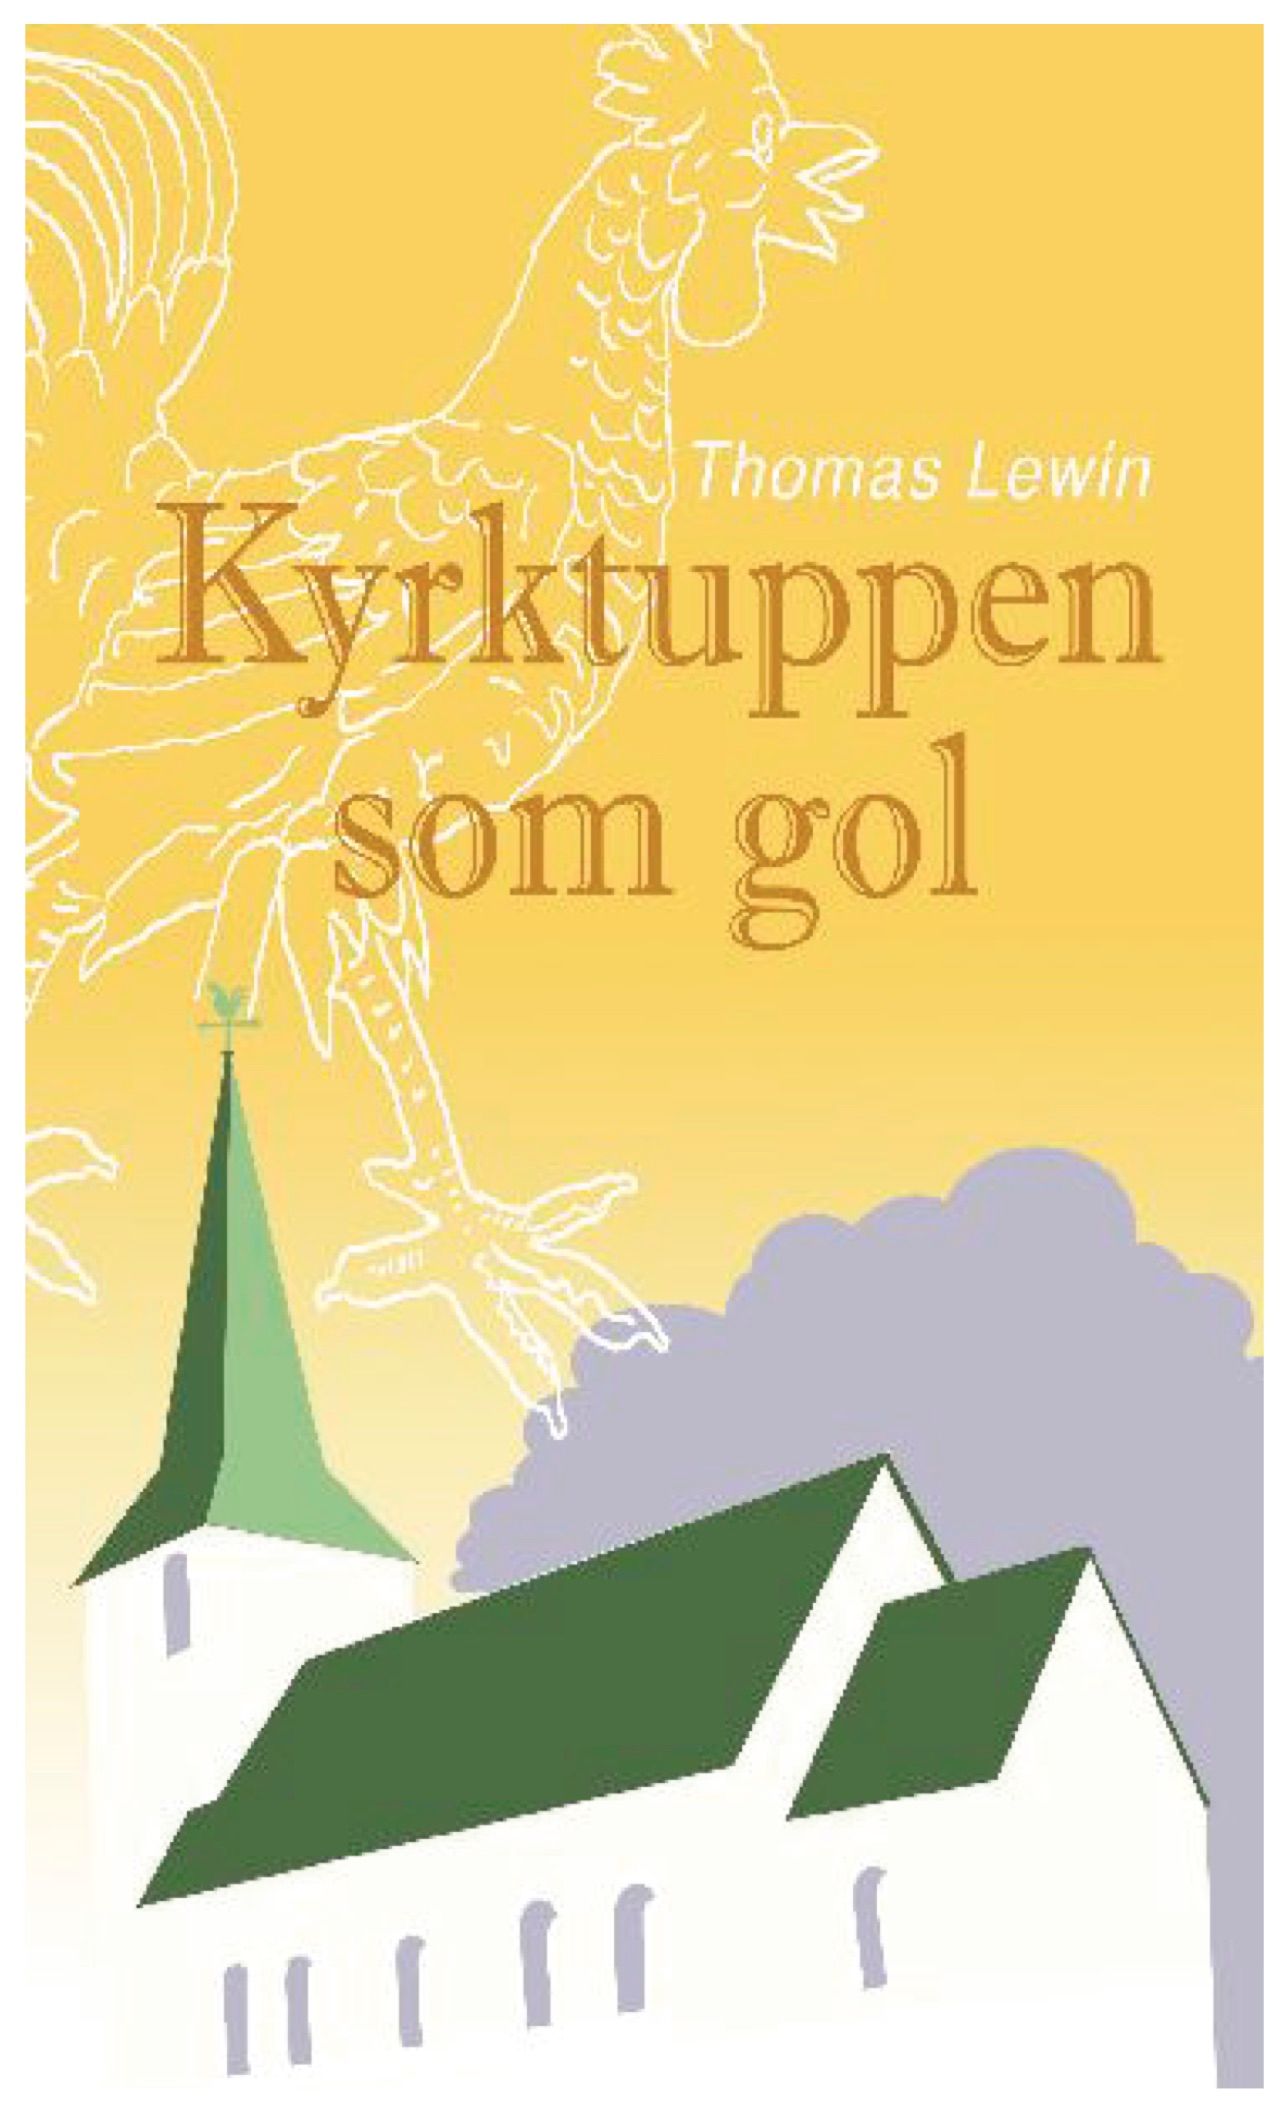 Kyrktuppen som gol, eBook by Thomas Lewin